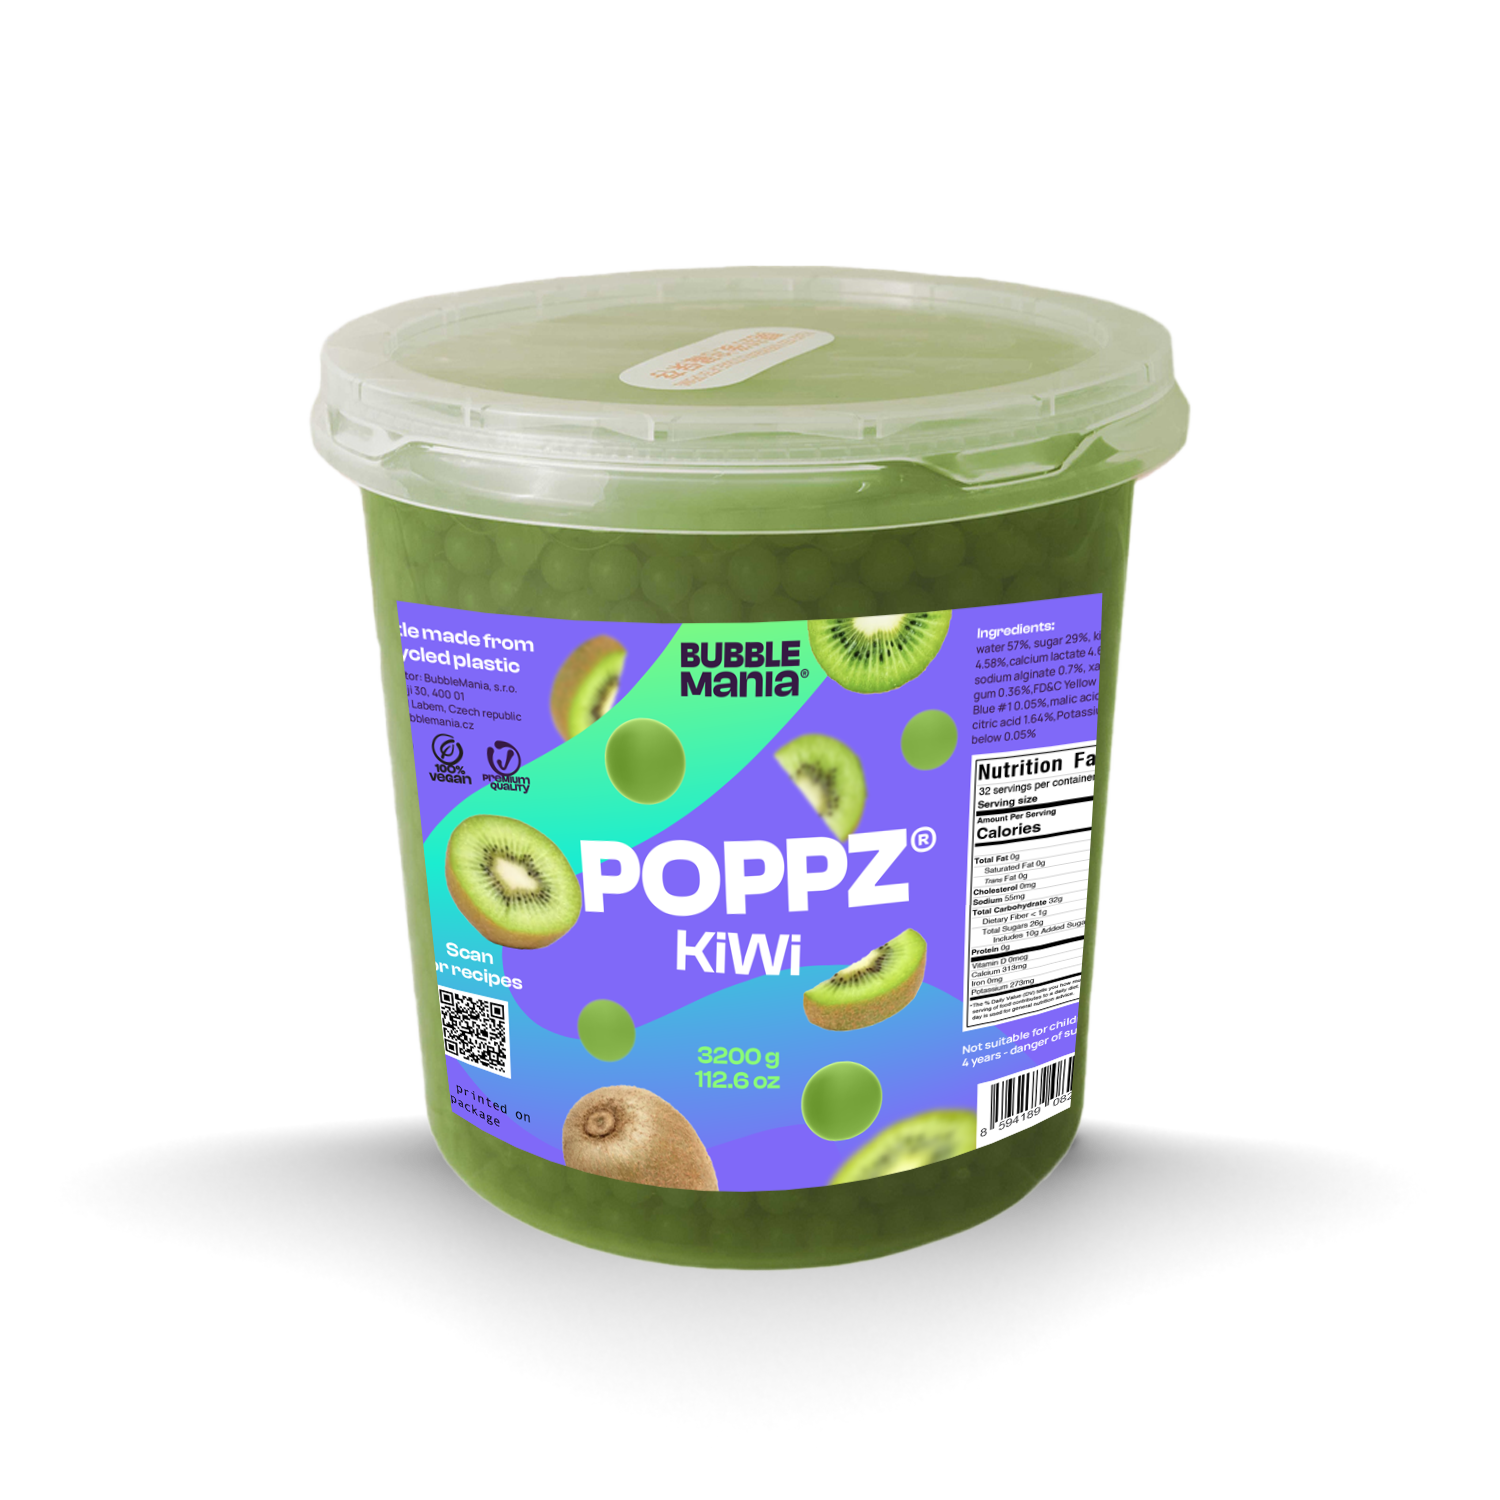 POPPZ Kiwi Kit with Tapioca scoop and 10 straws